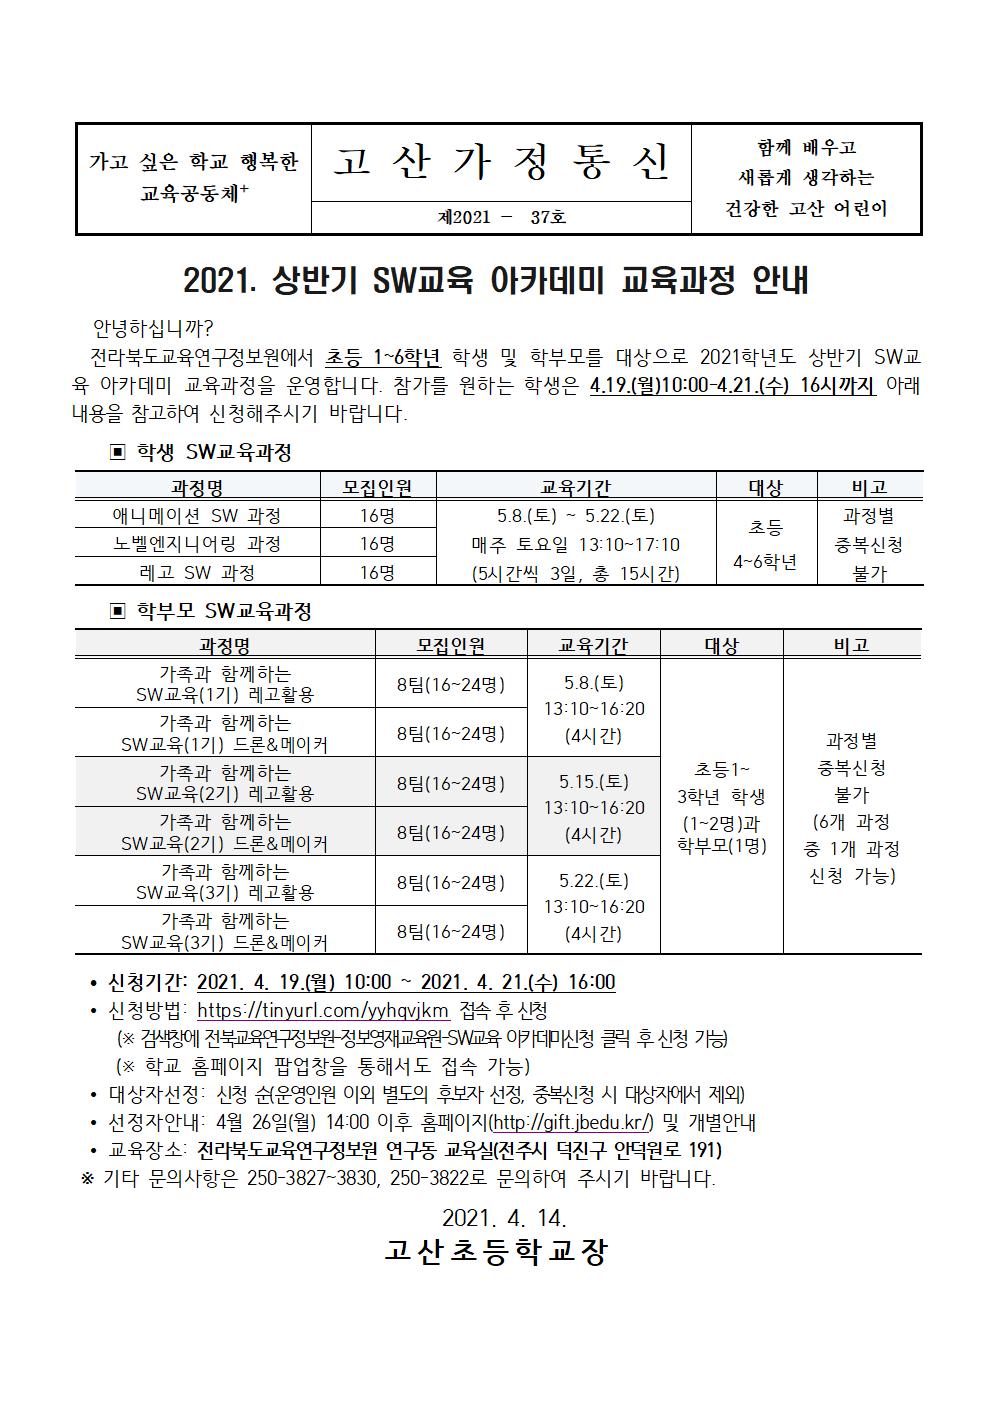 21-37 2021 상반기 SW교육 아카데미 교육과정 신청 안내장001